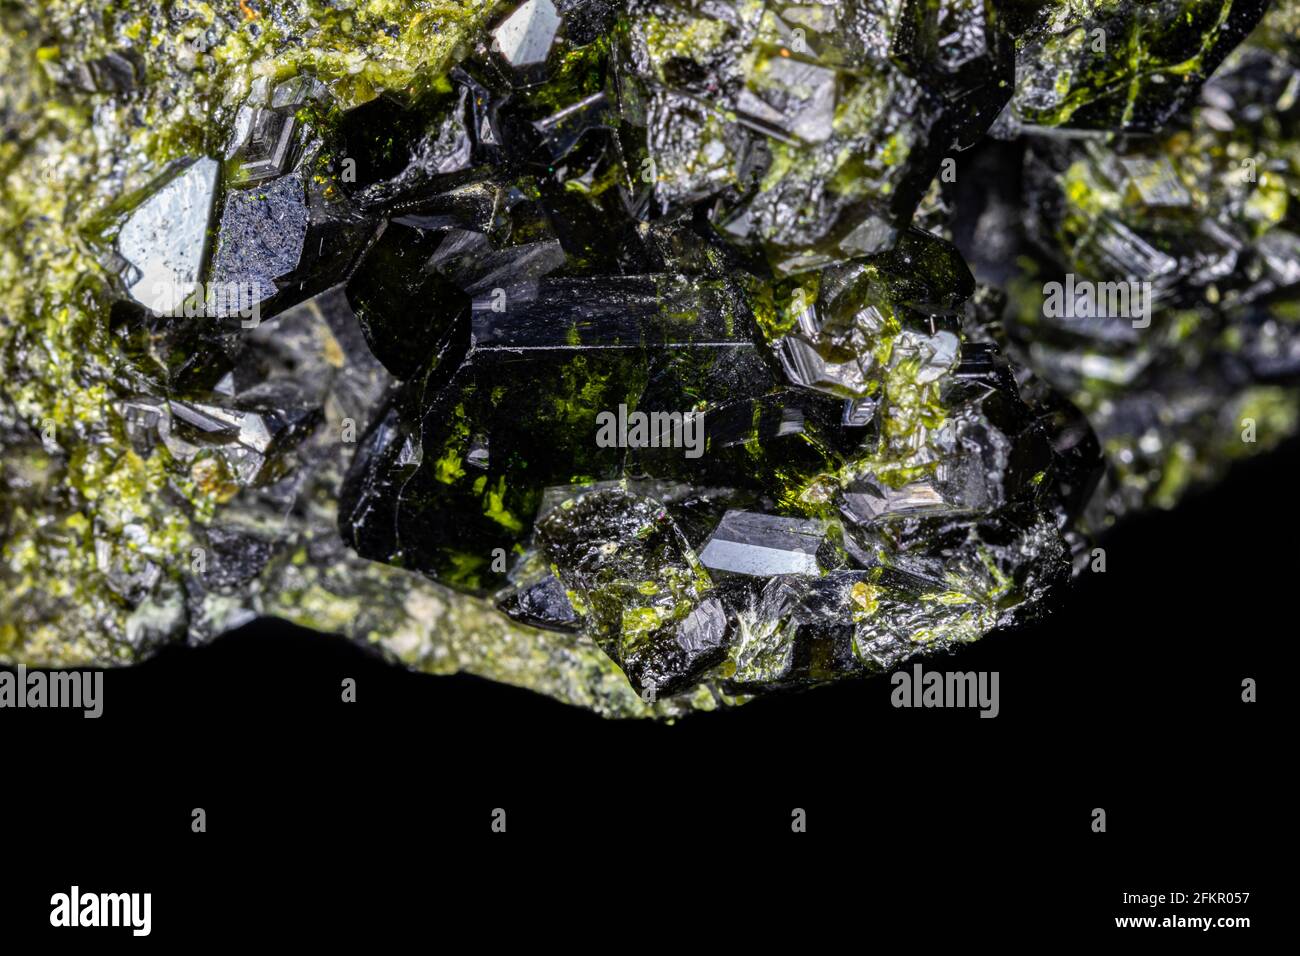 Gros plan du groupe de cristaux épidotes. Spécimen noir et vert plus grand, entouré de cristaux plus petits. Du Pakistan. Banque D'Images